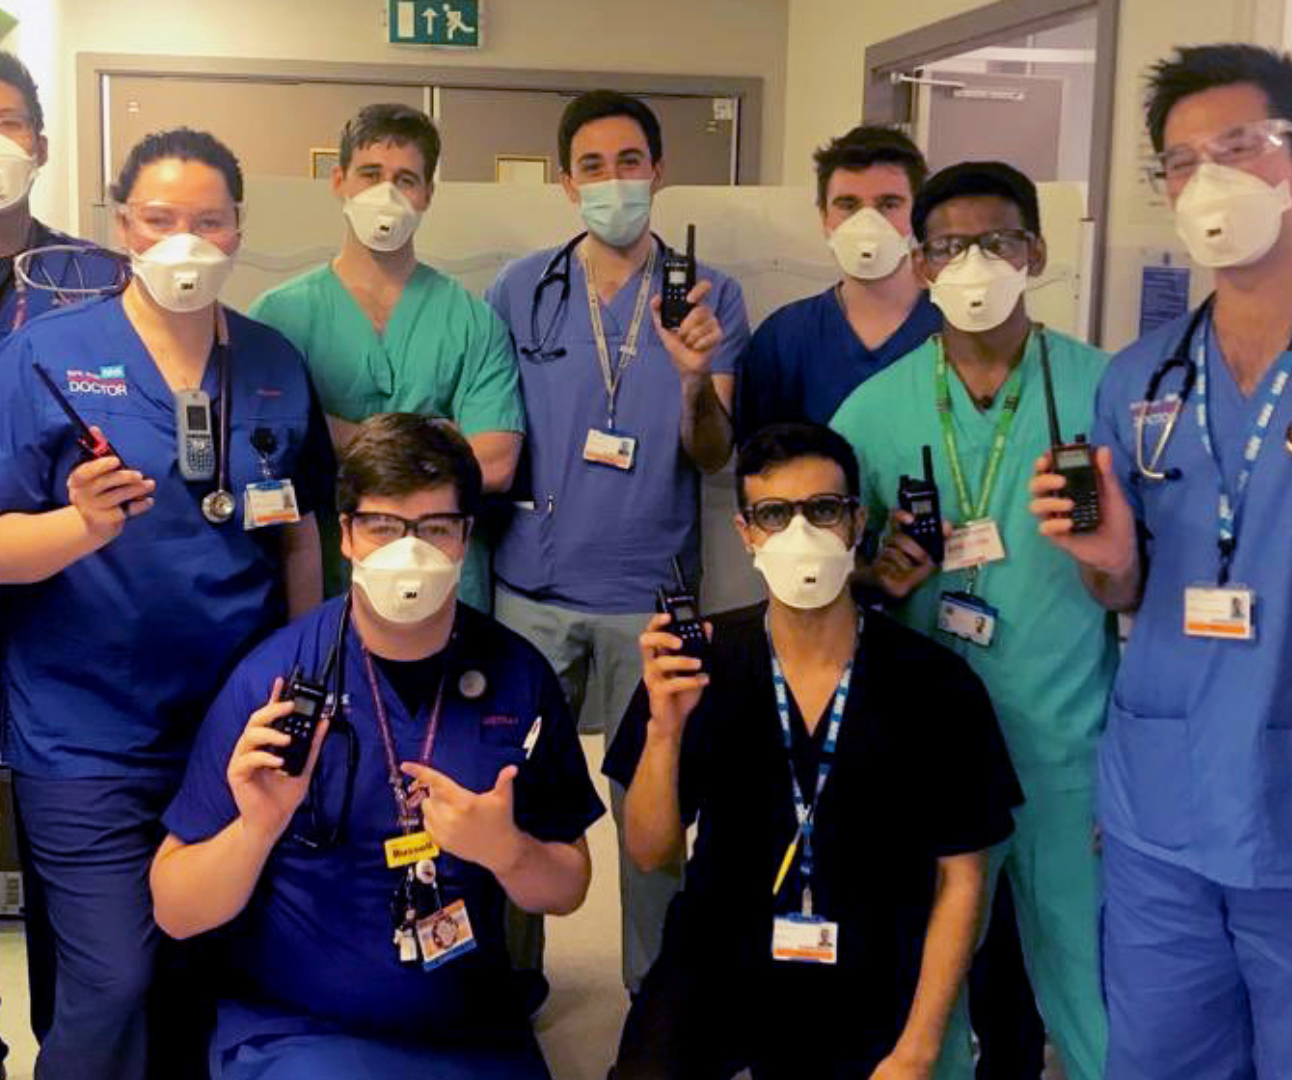 NHS staff with walkie-talkies